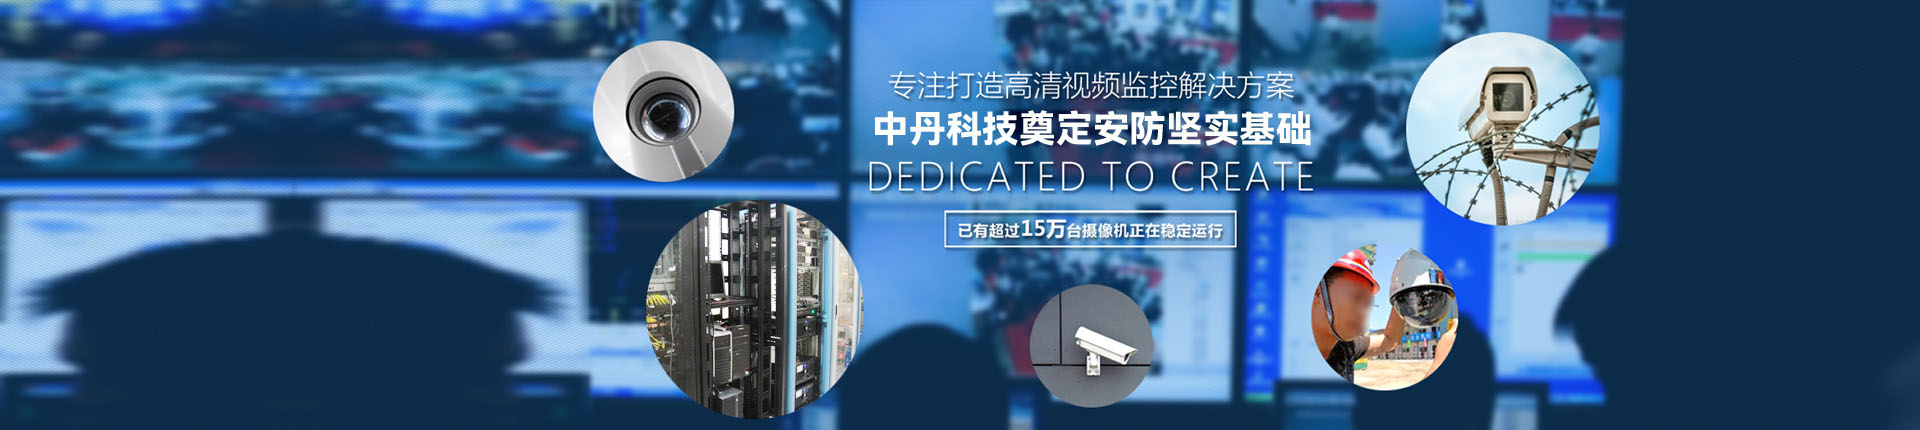 专注打造视频高清监控解决方案江西中丹科技有限公司